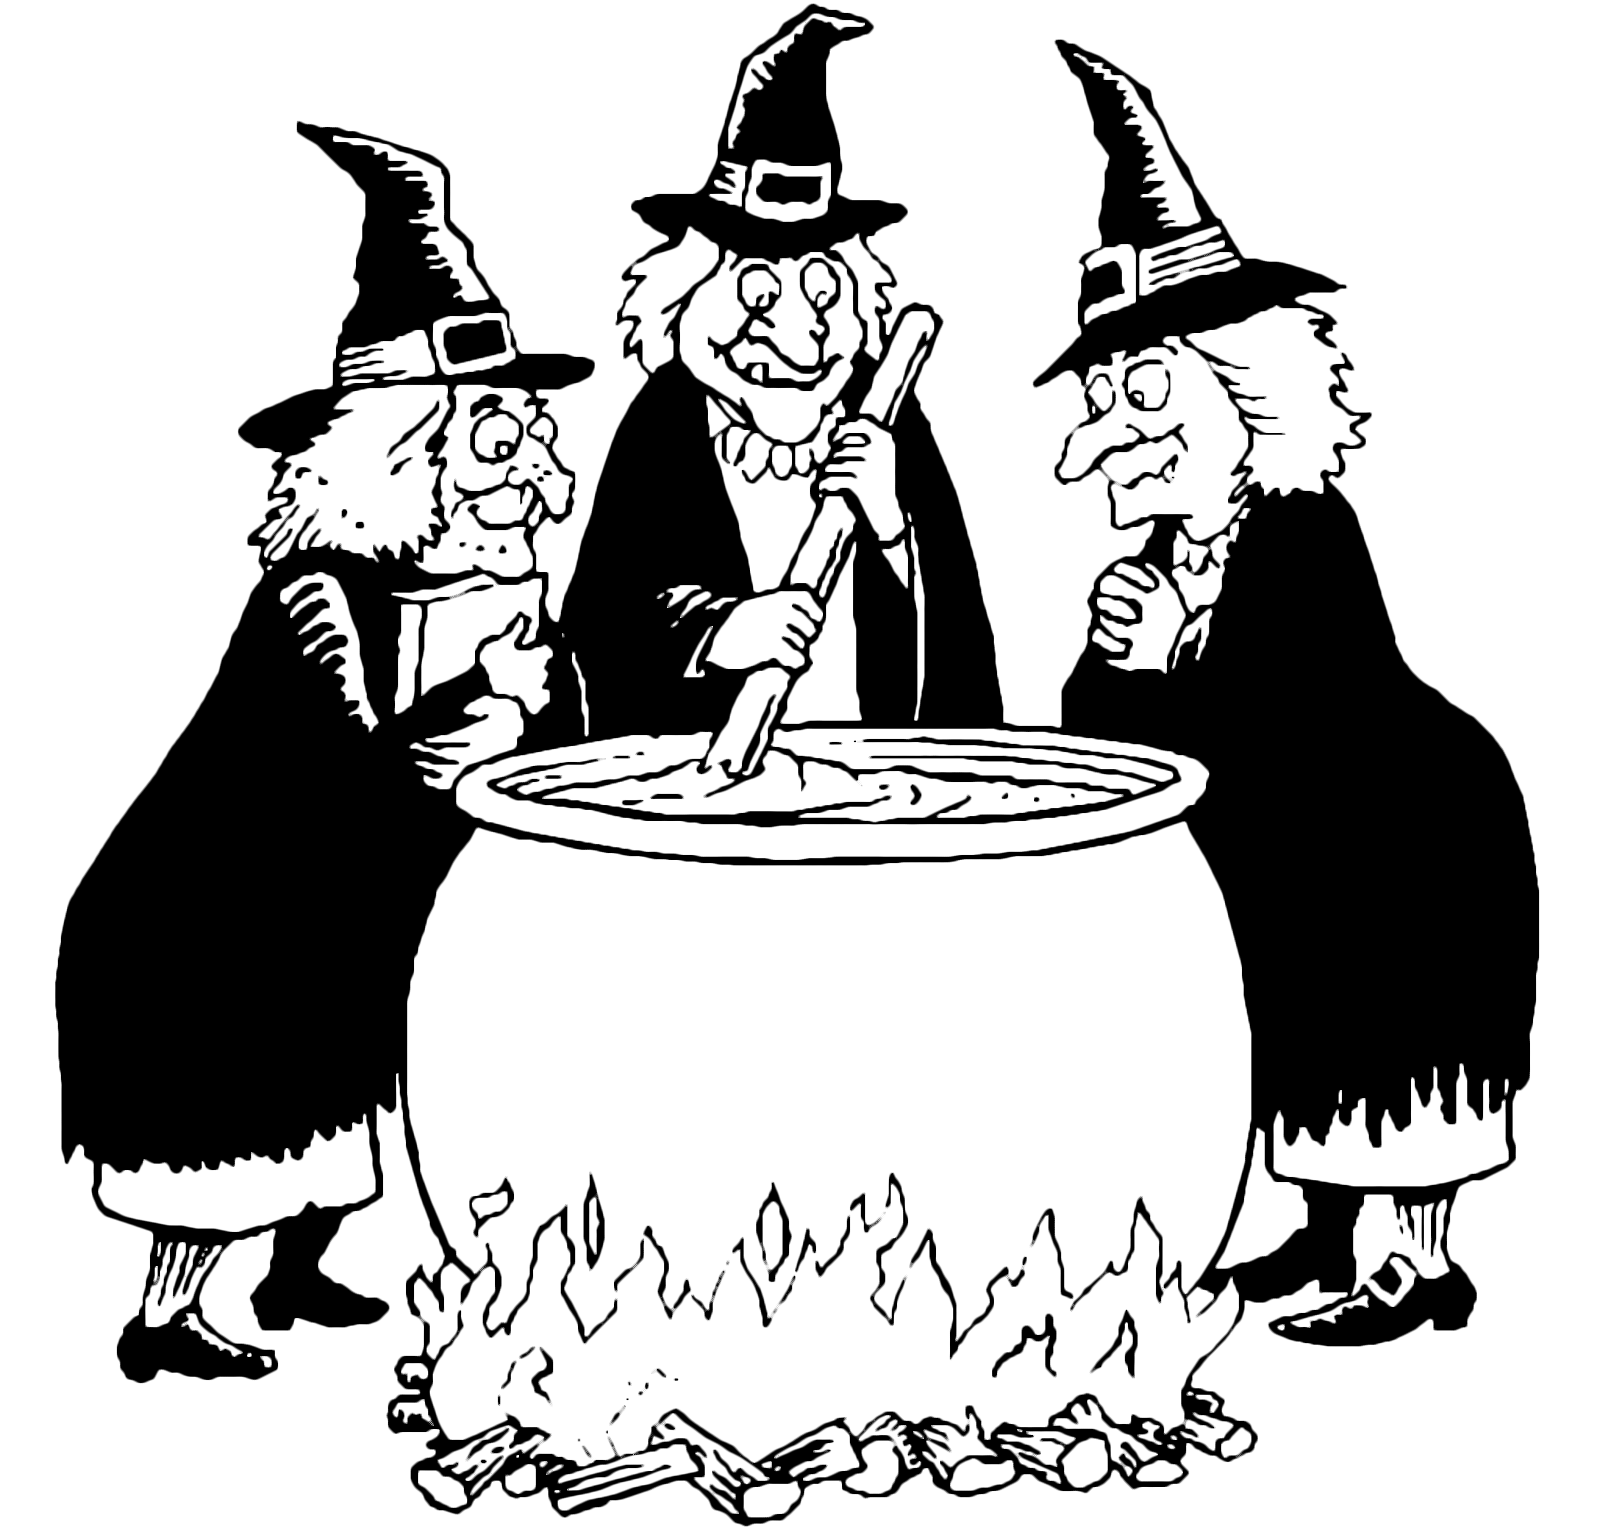 Halloween - Tre streghe stanno preparando una pozione magica